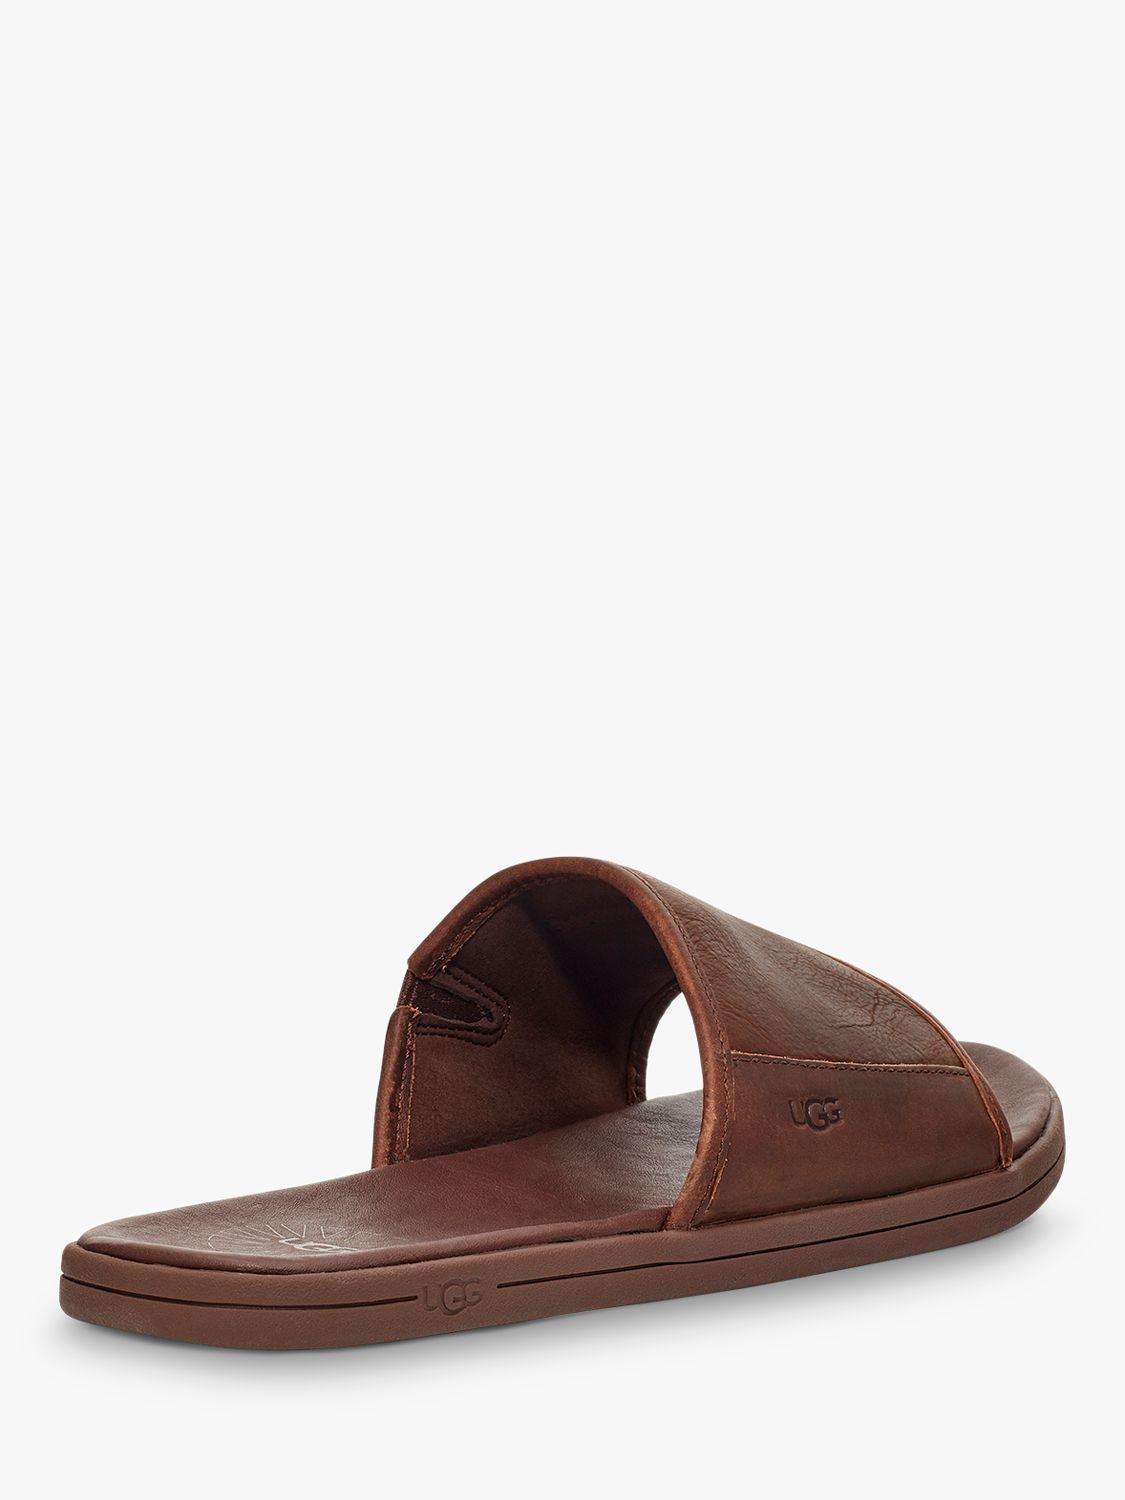 Buy UGG Seaside Leather Slider Sandals, Luggage Online at johnlewis.com